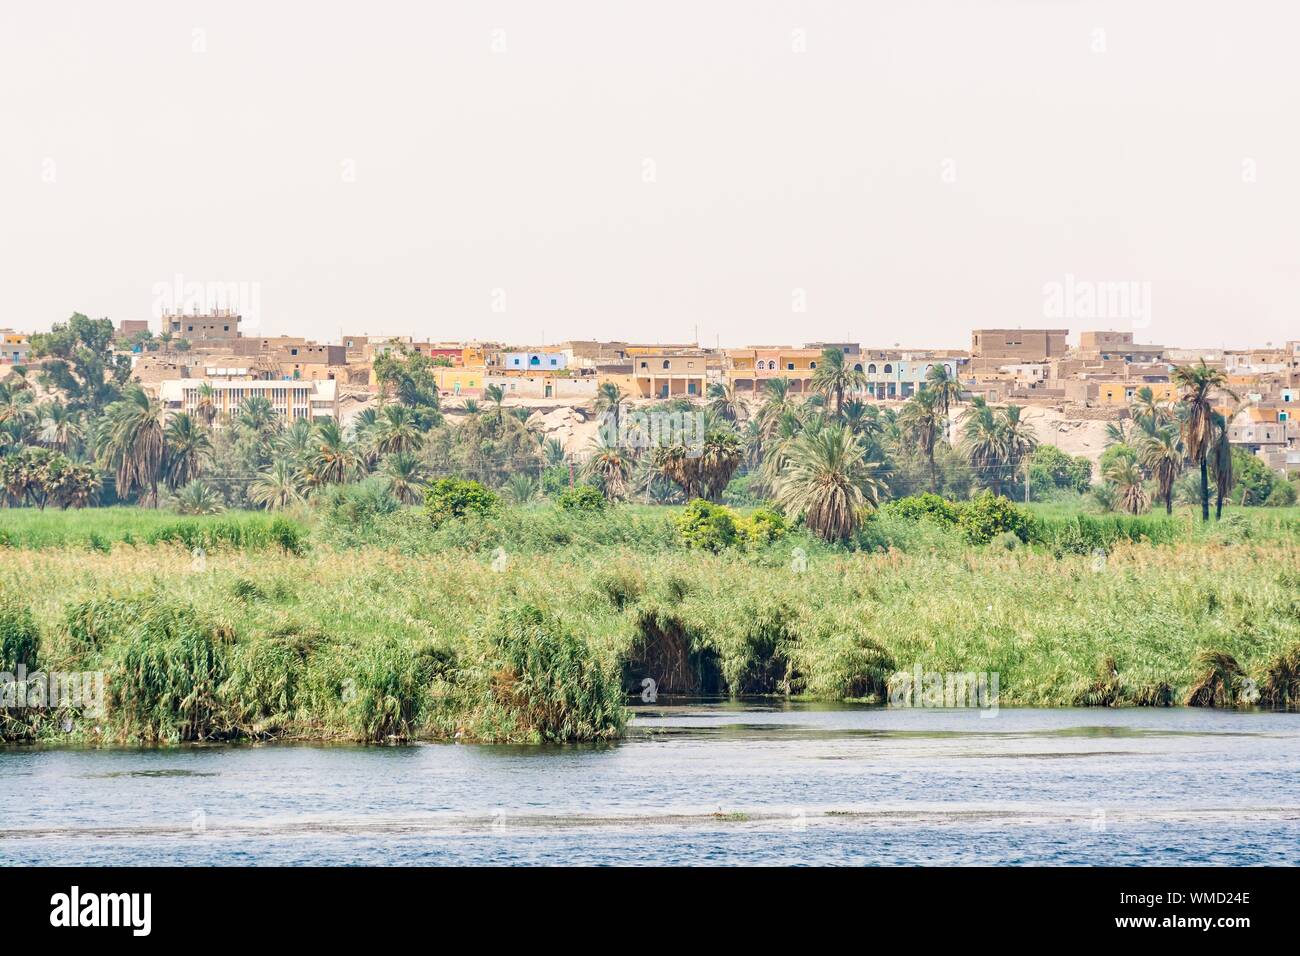 Banque du Nil vu au cours de l'Egypte, croisière touristique Banque D'Images